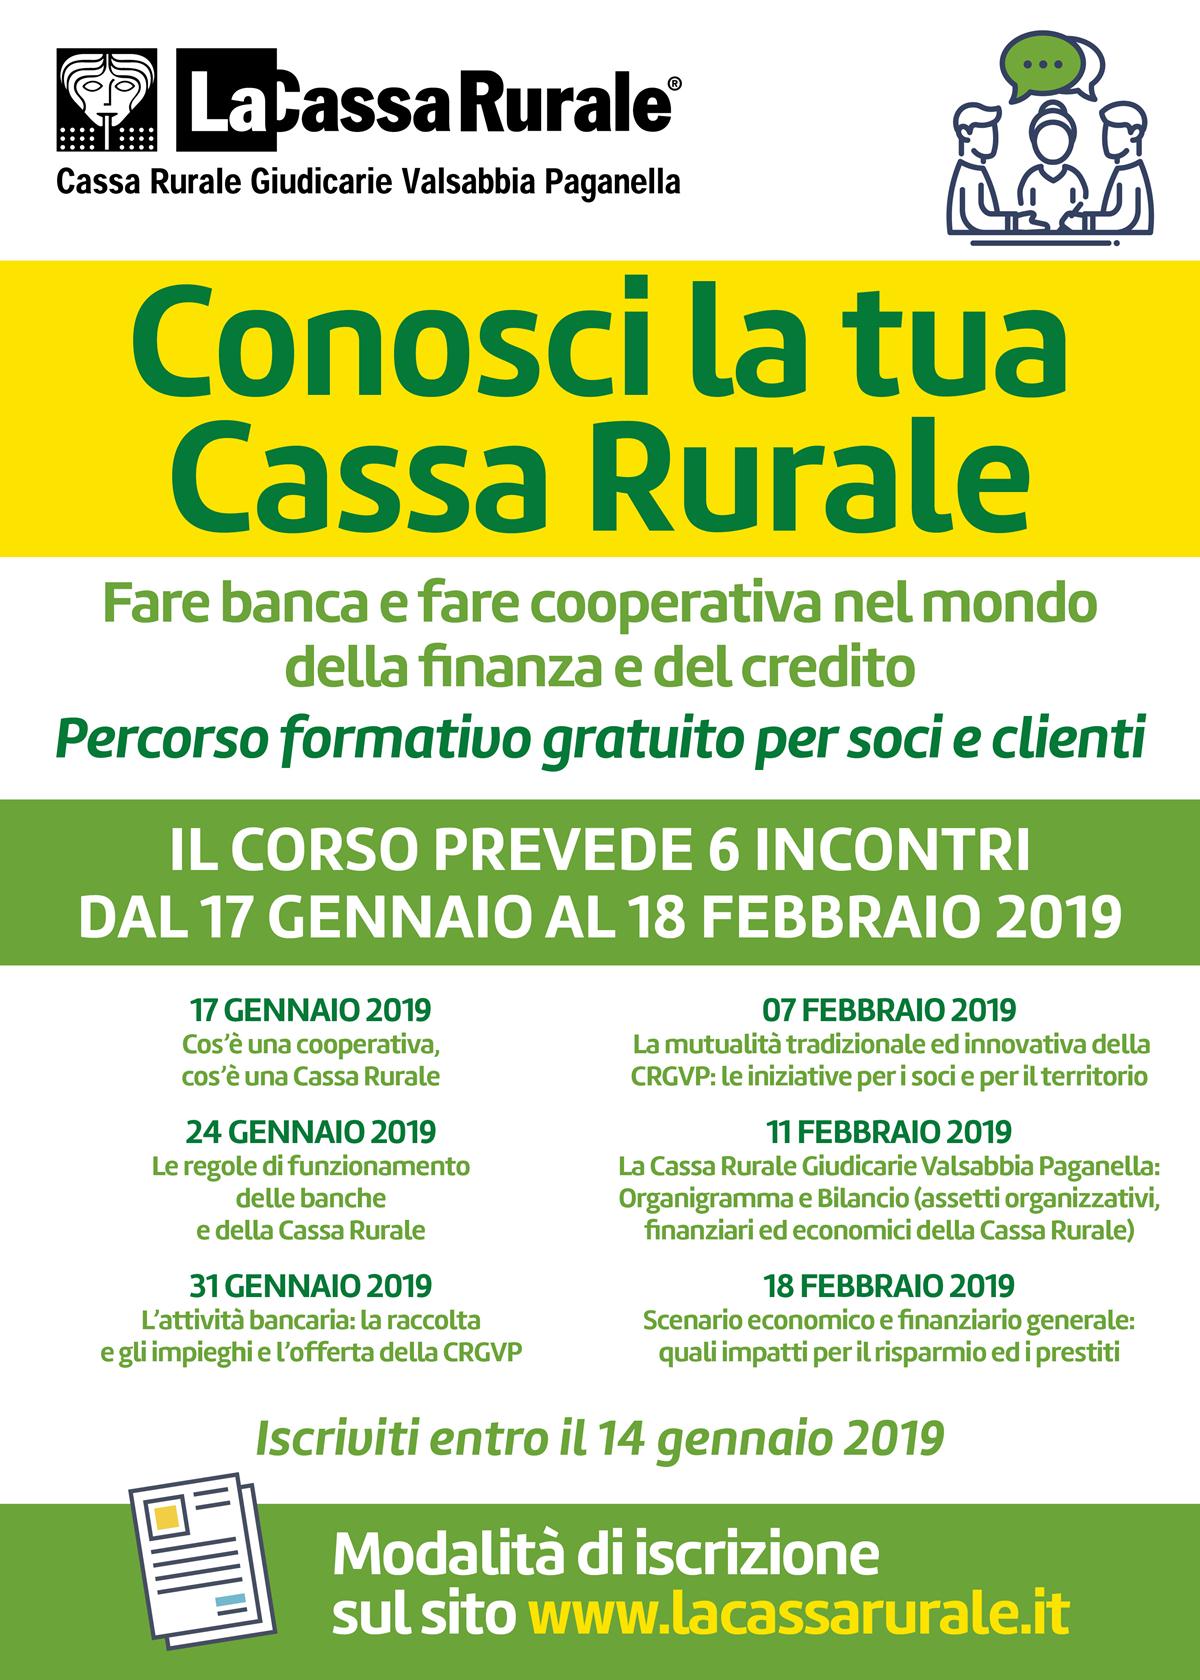 Conosci la tua Cassa Rurale: al via il percorso formativo per soci e clienti promosso dalla Cassa Rurale Giudicarie Valsabbia Paganella